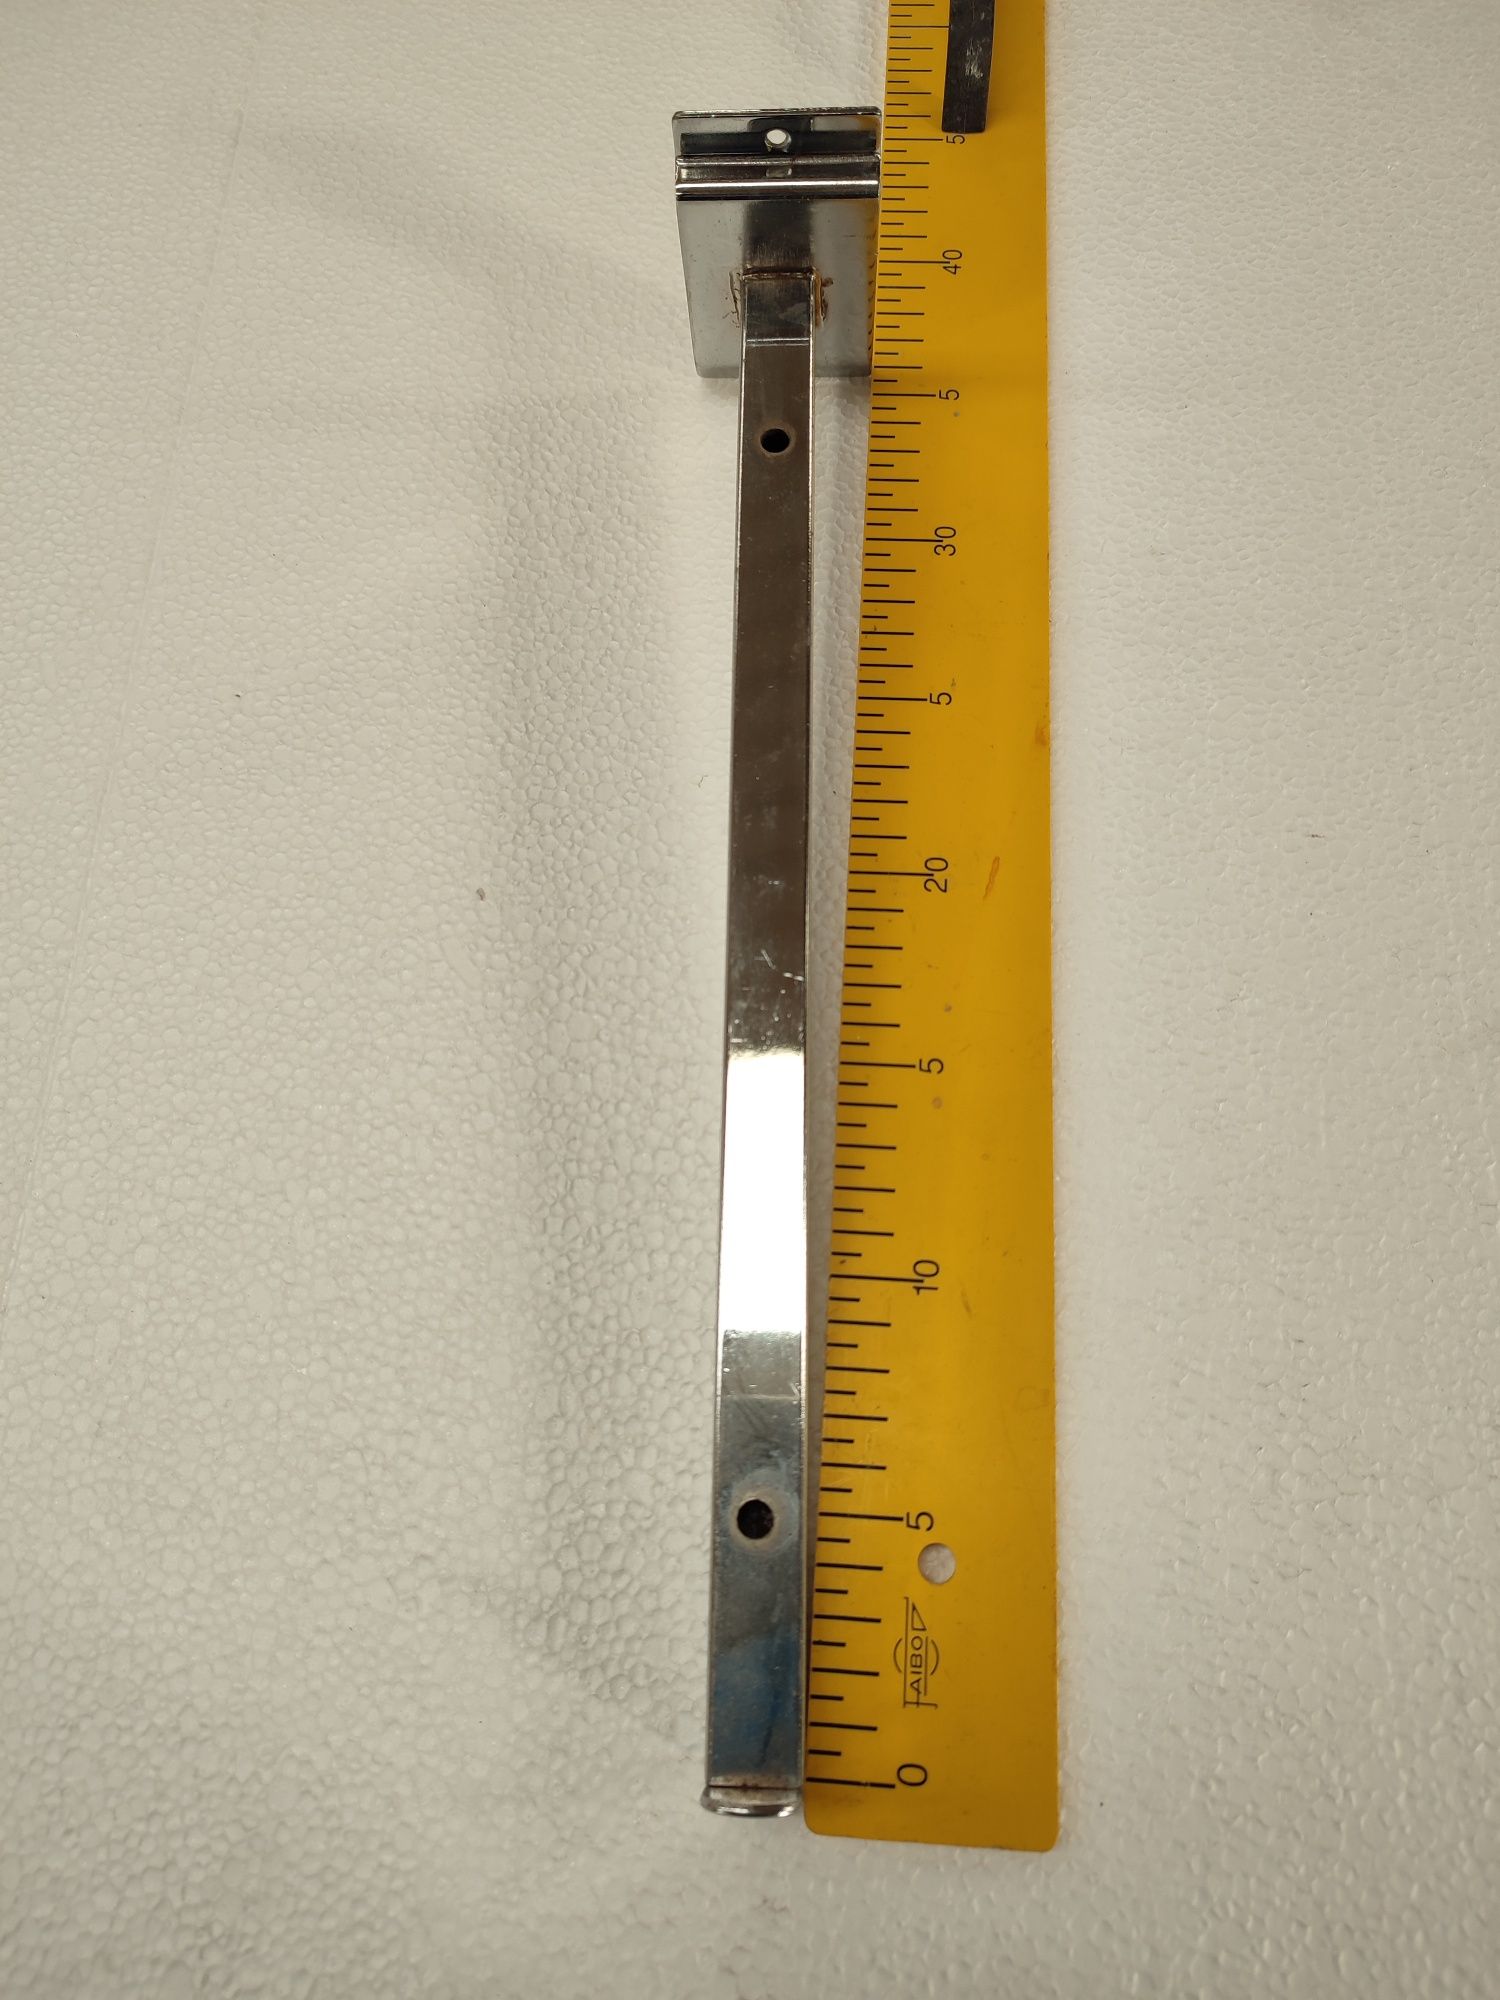 Ganchos/suportes usados para placa expositora para prateleiras